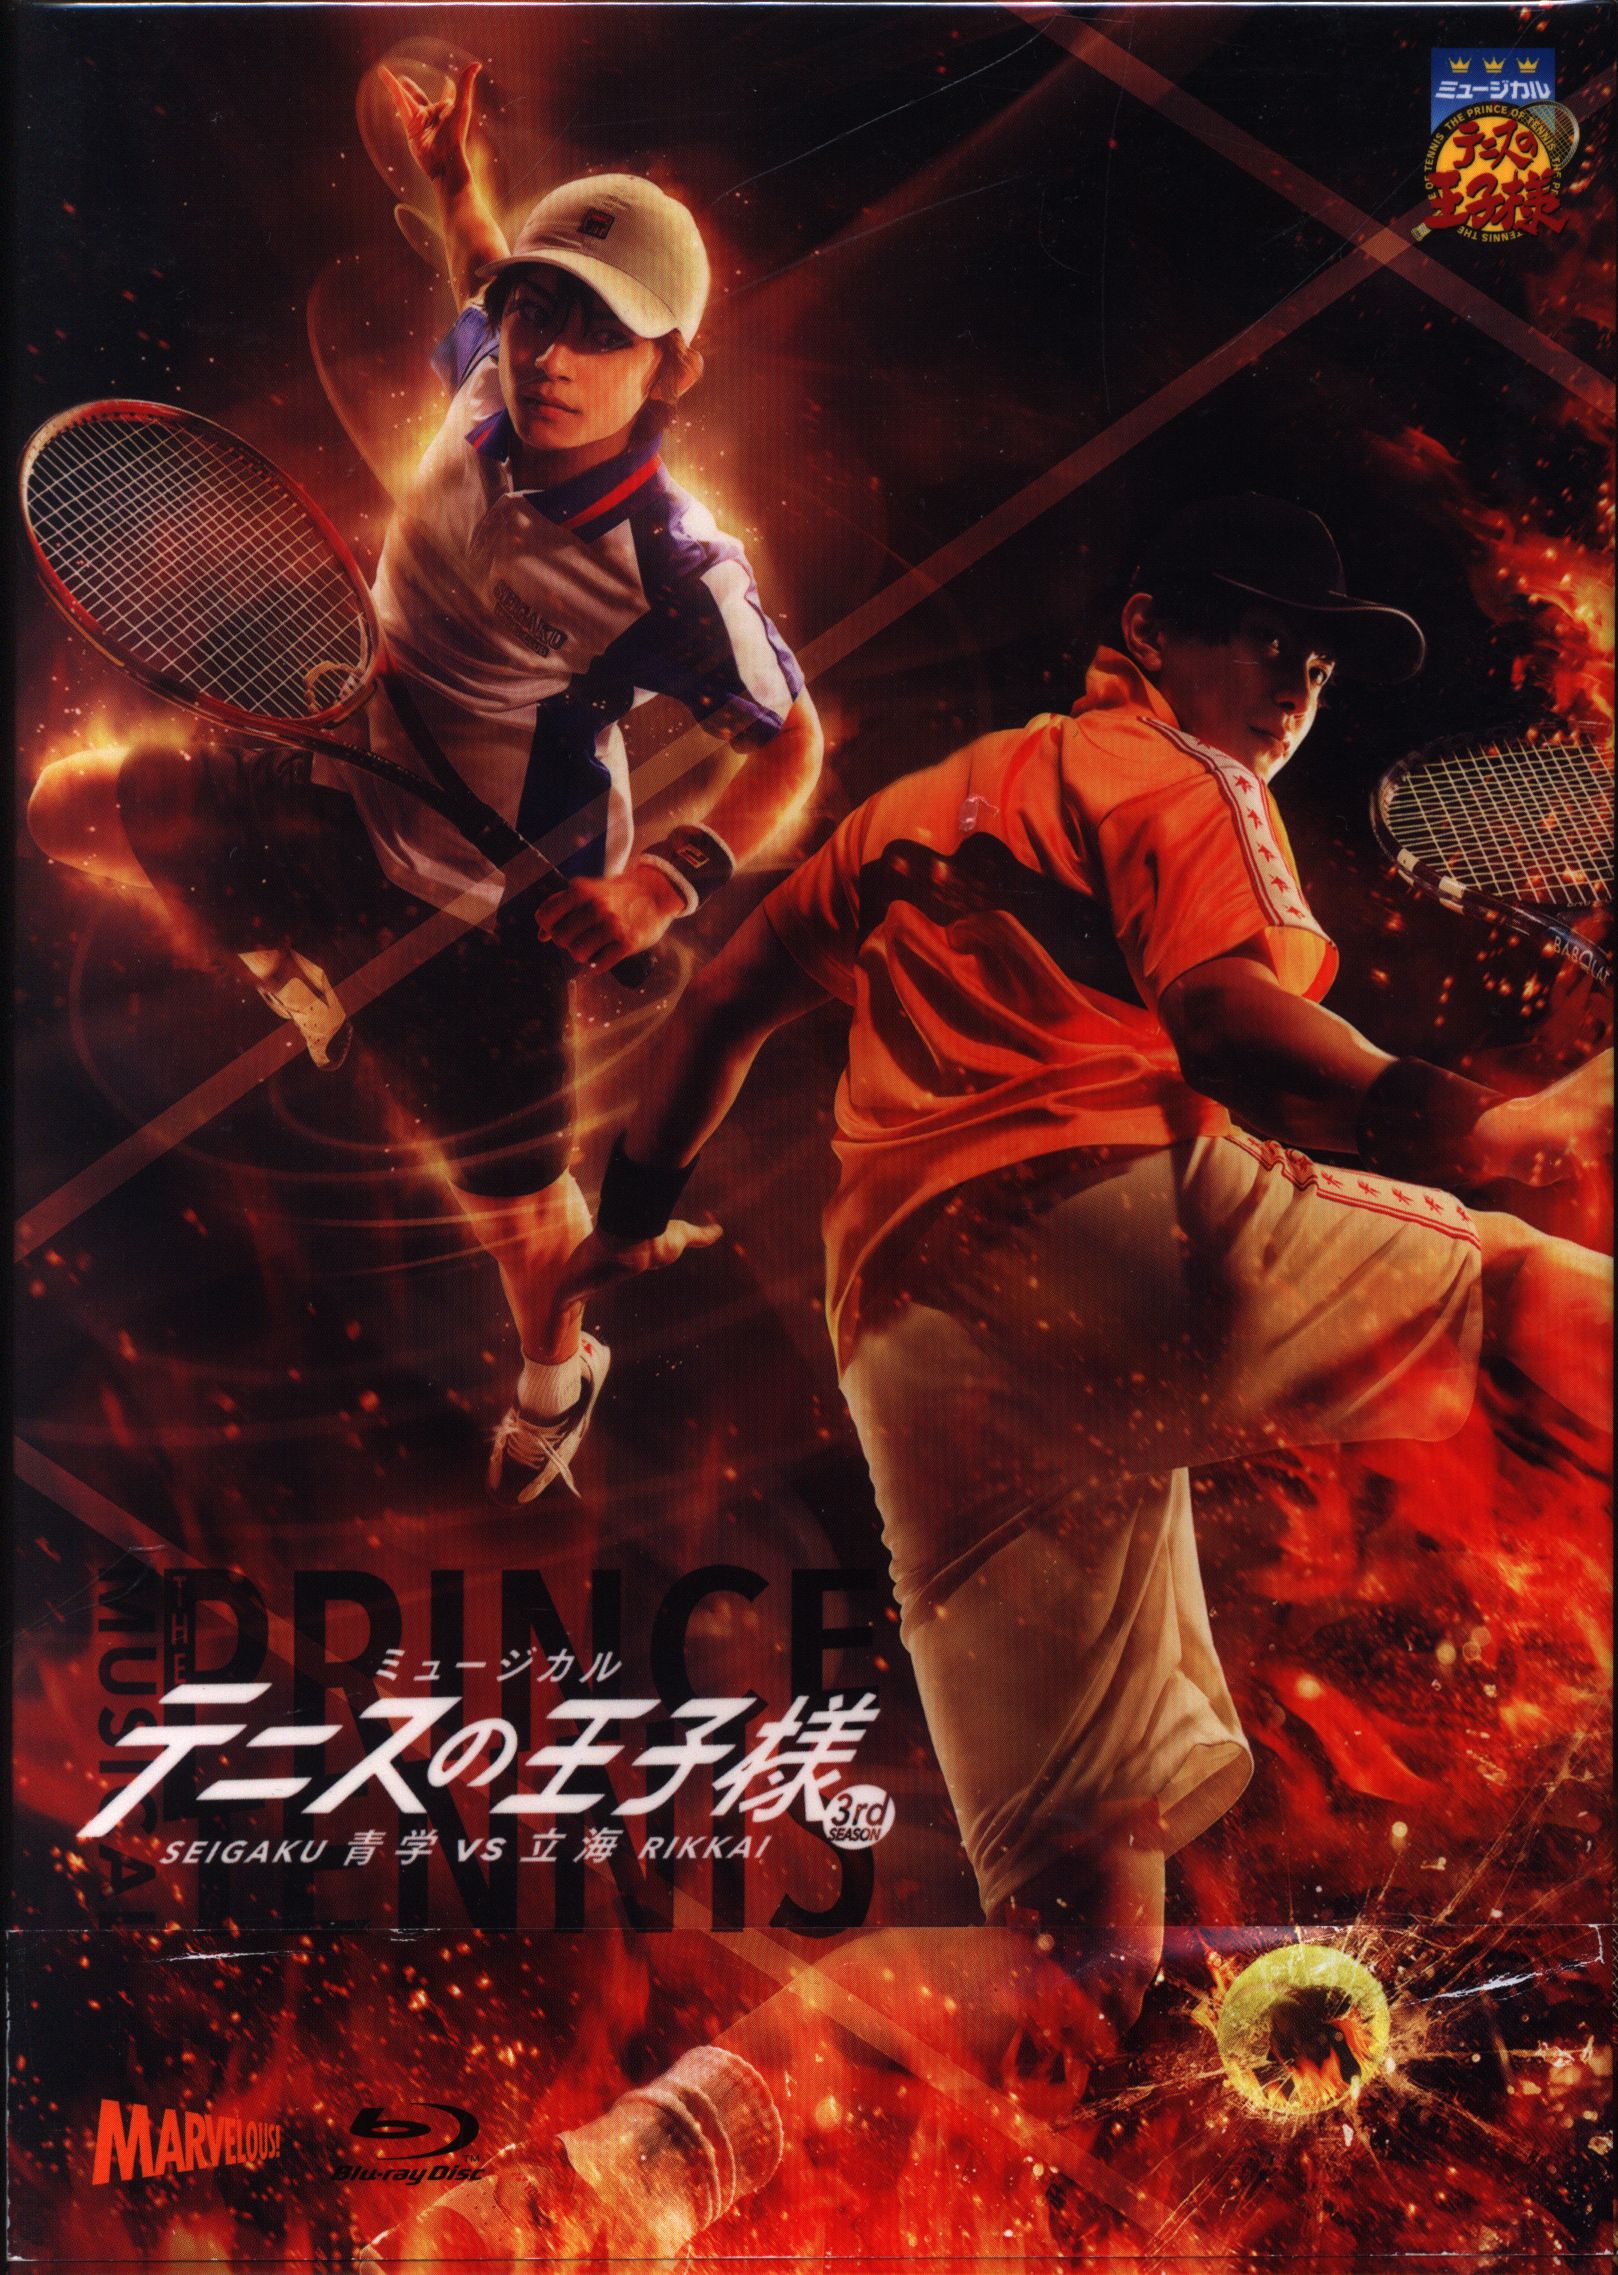 舞台Blu-ray SP版 ミュージカル テニスの王子様 3rd シーズン 青学vs立